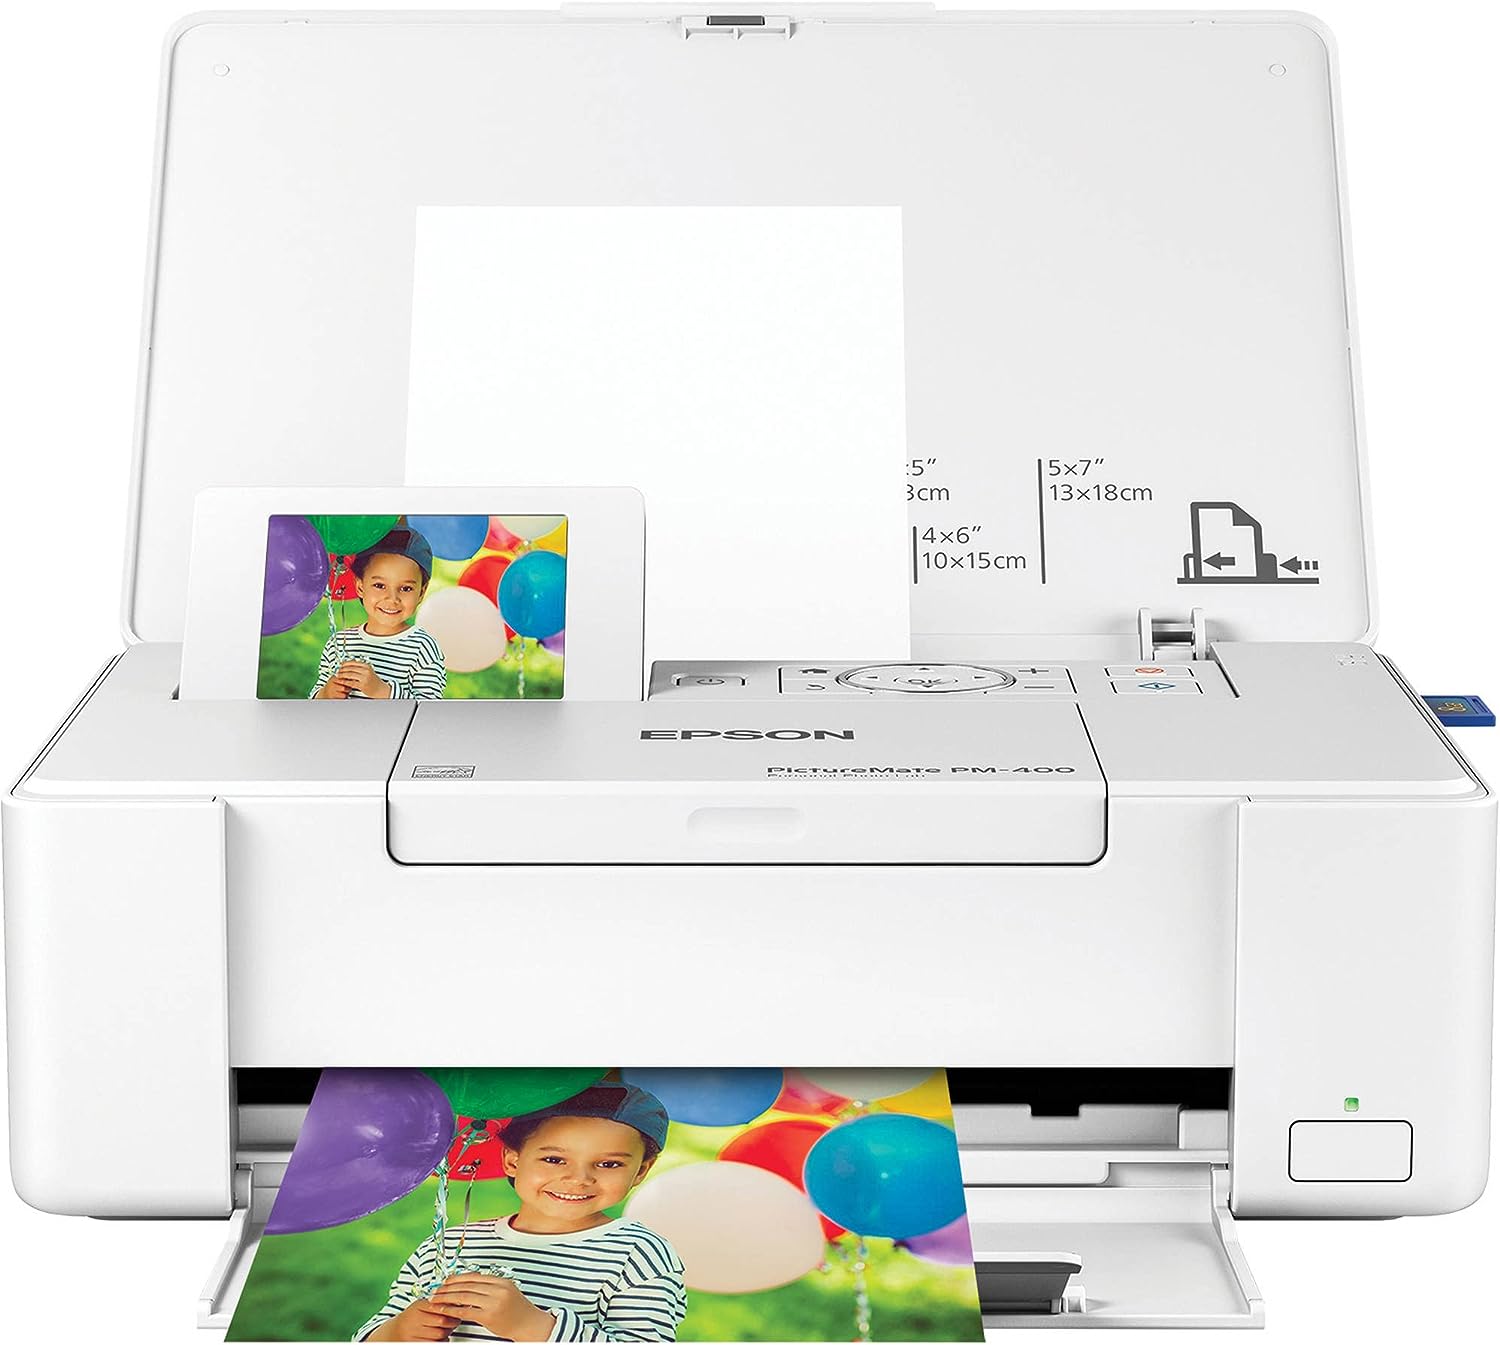 Epson PictureMate PM-400 Wireless Color Photo Printer, [...]